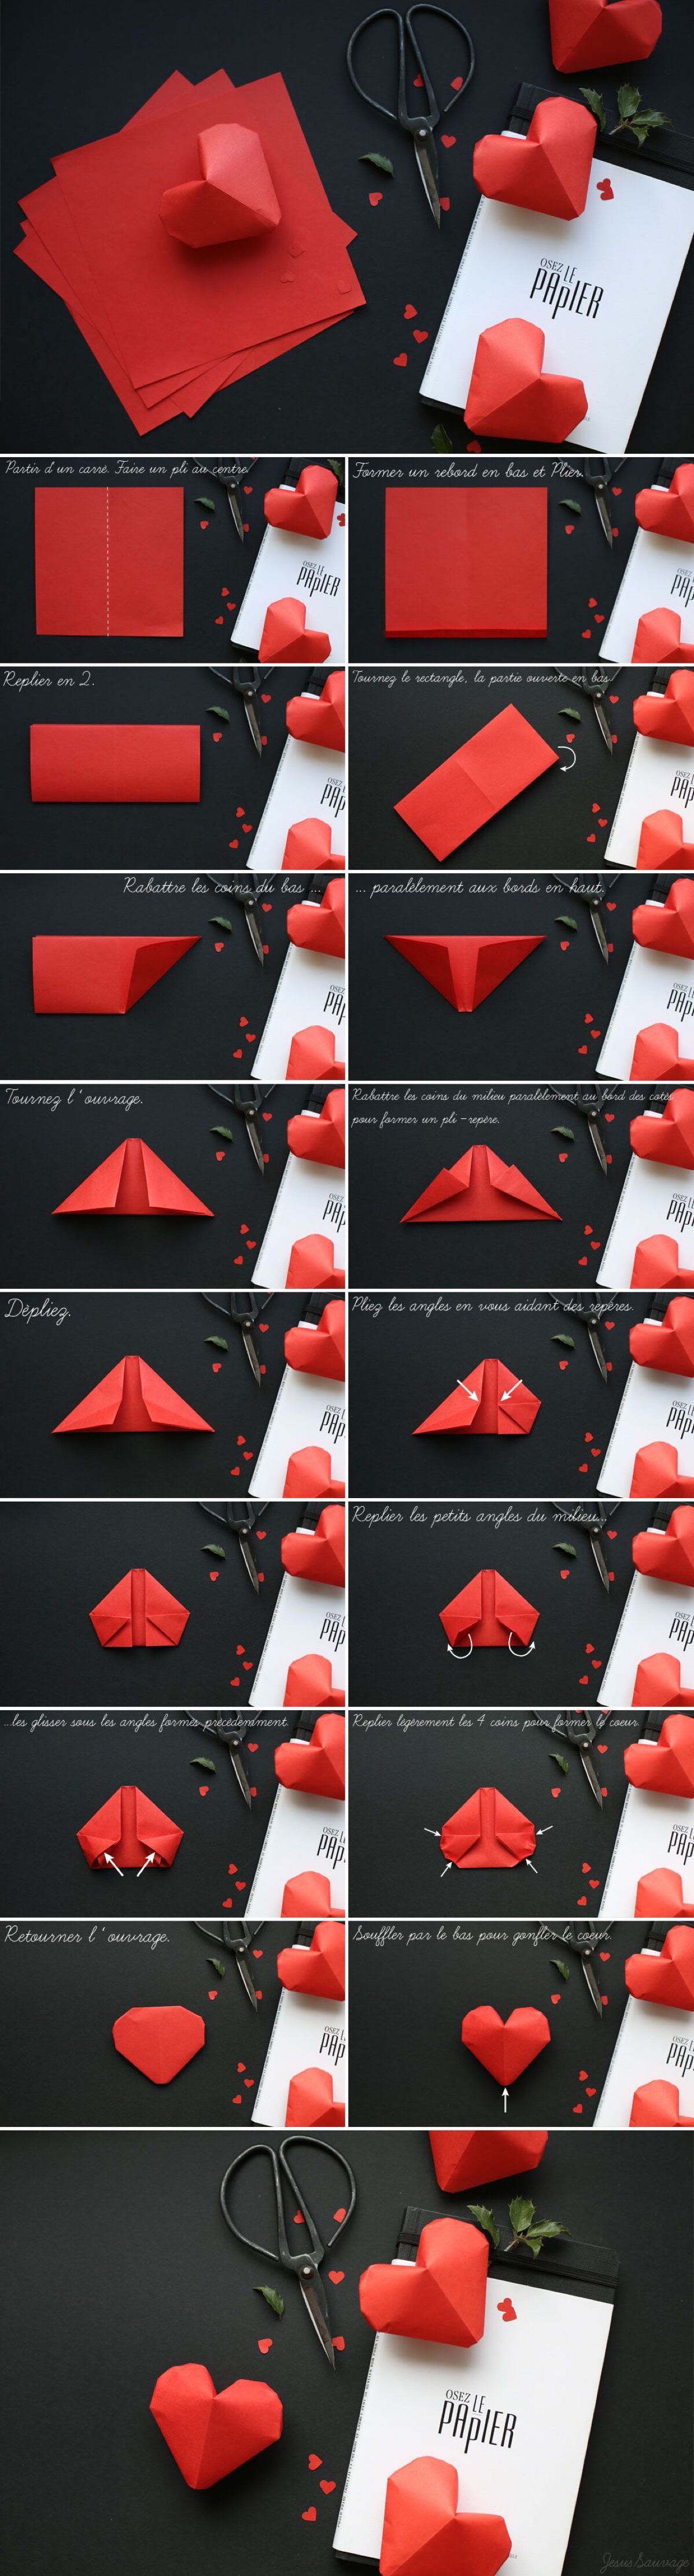 折纸爱心制作教程